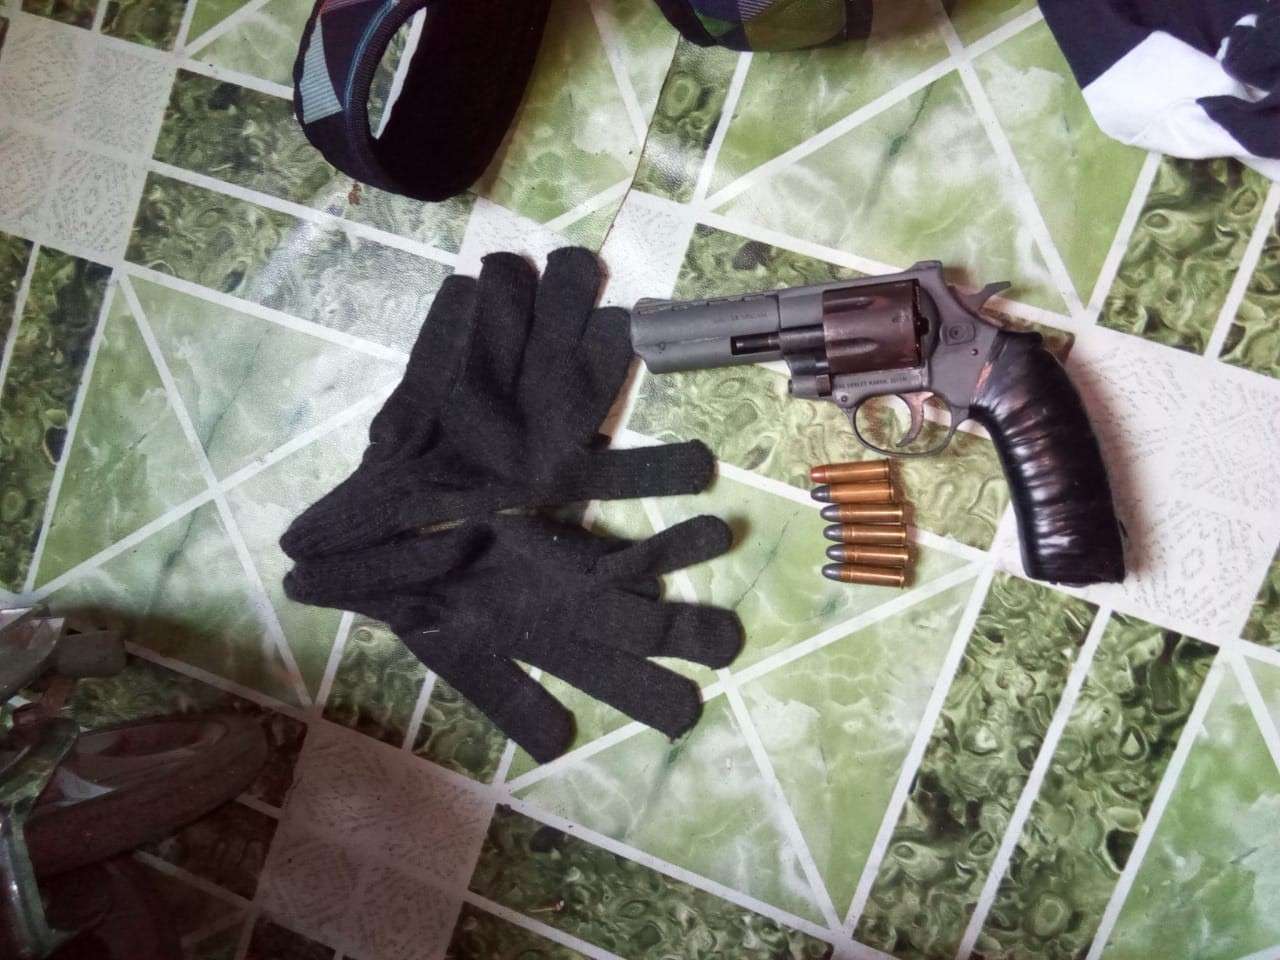 Vista general del arma recuperada por la policía. Foto: Diómedes Sánchez